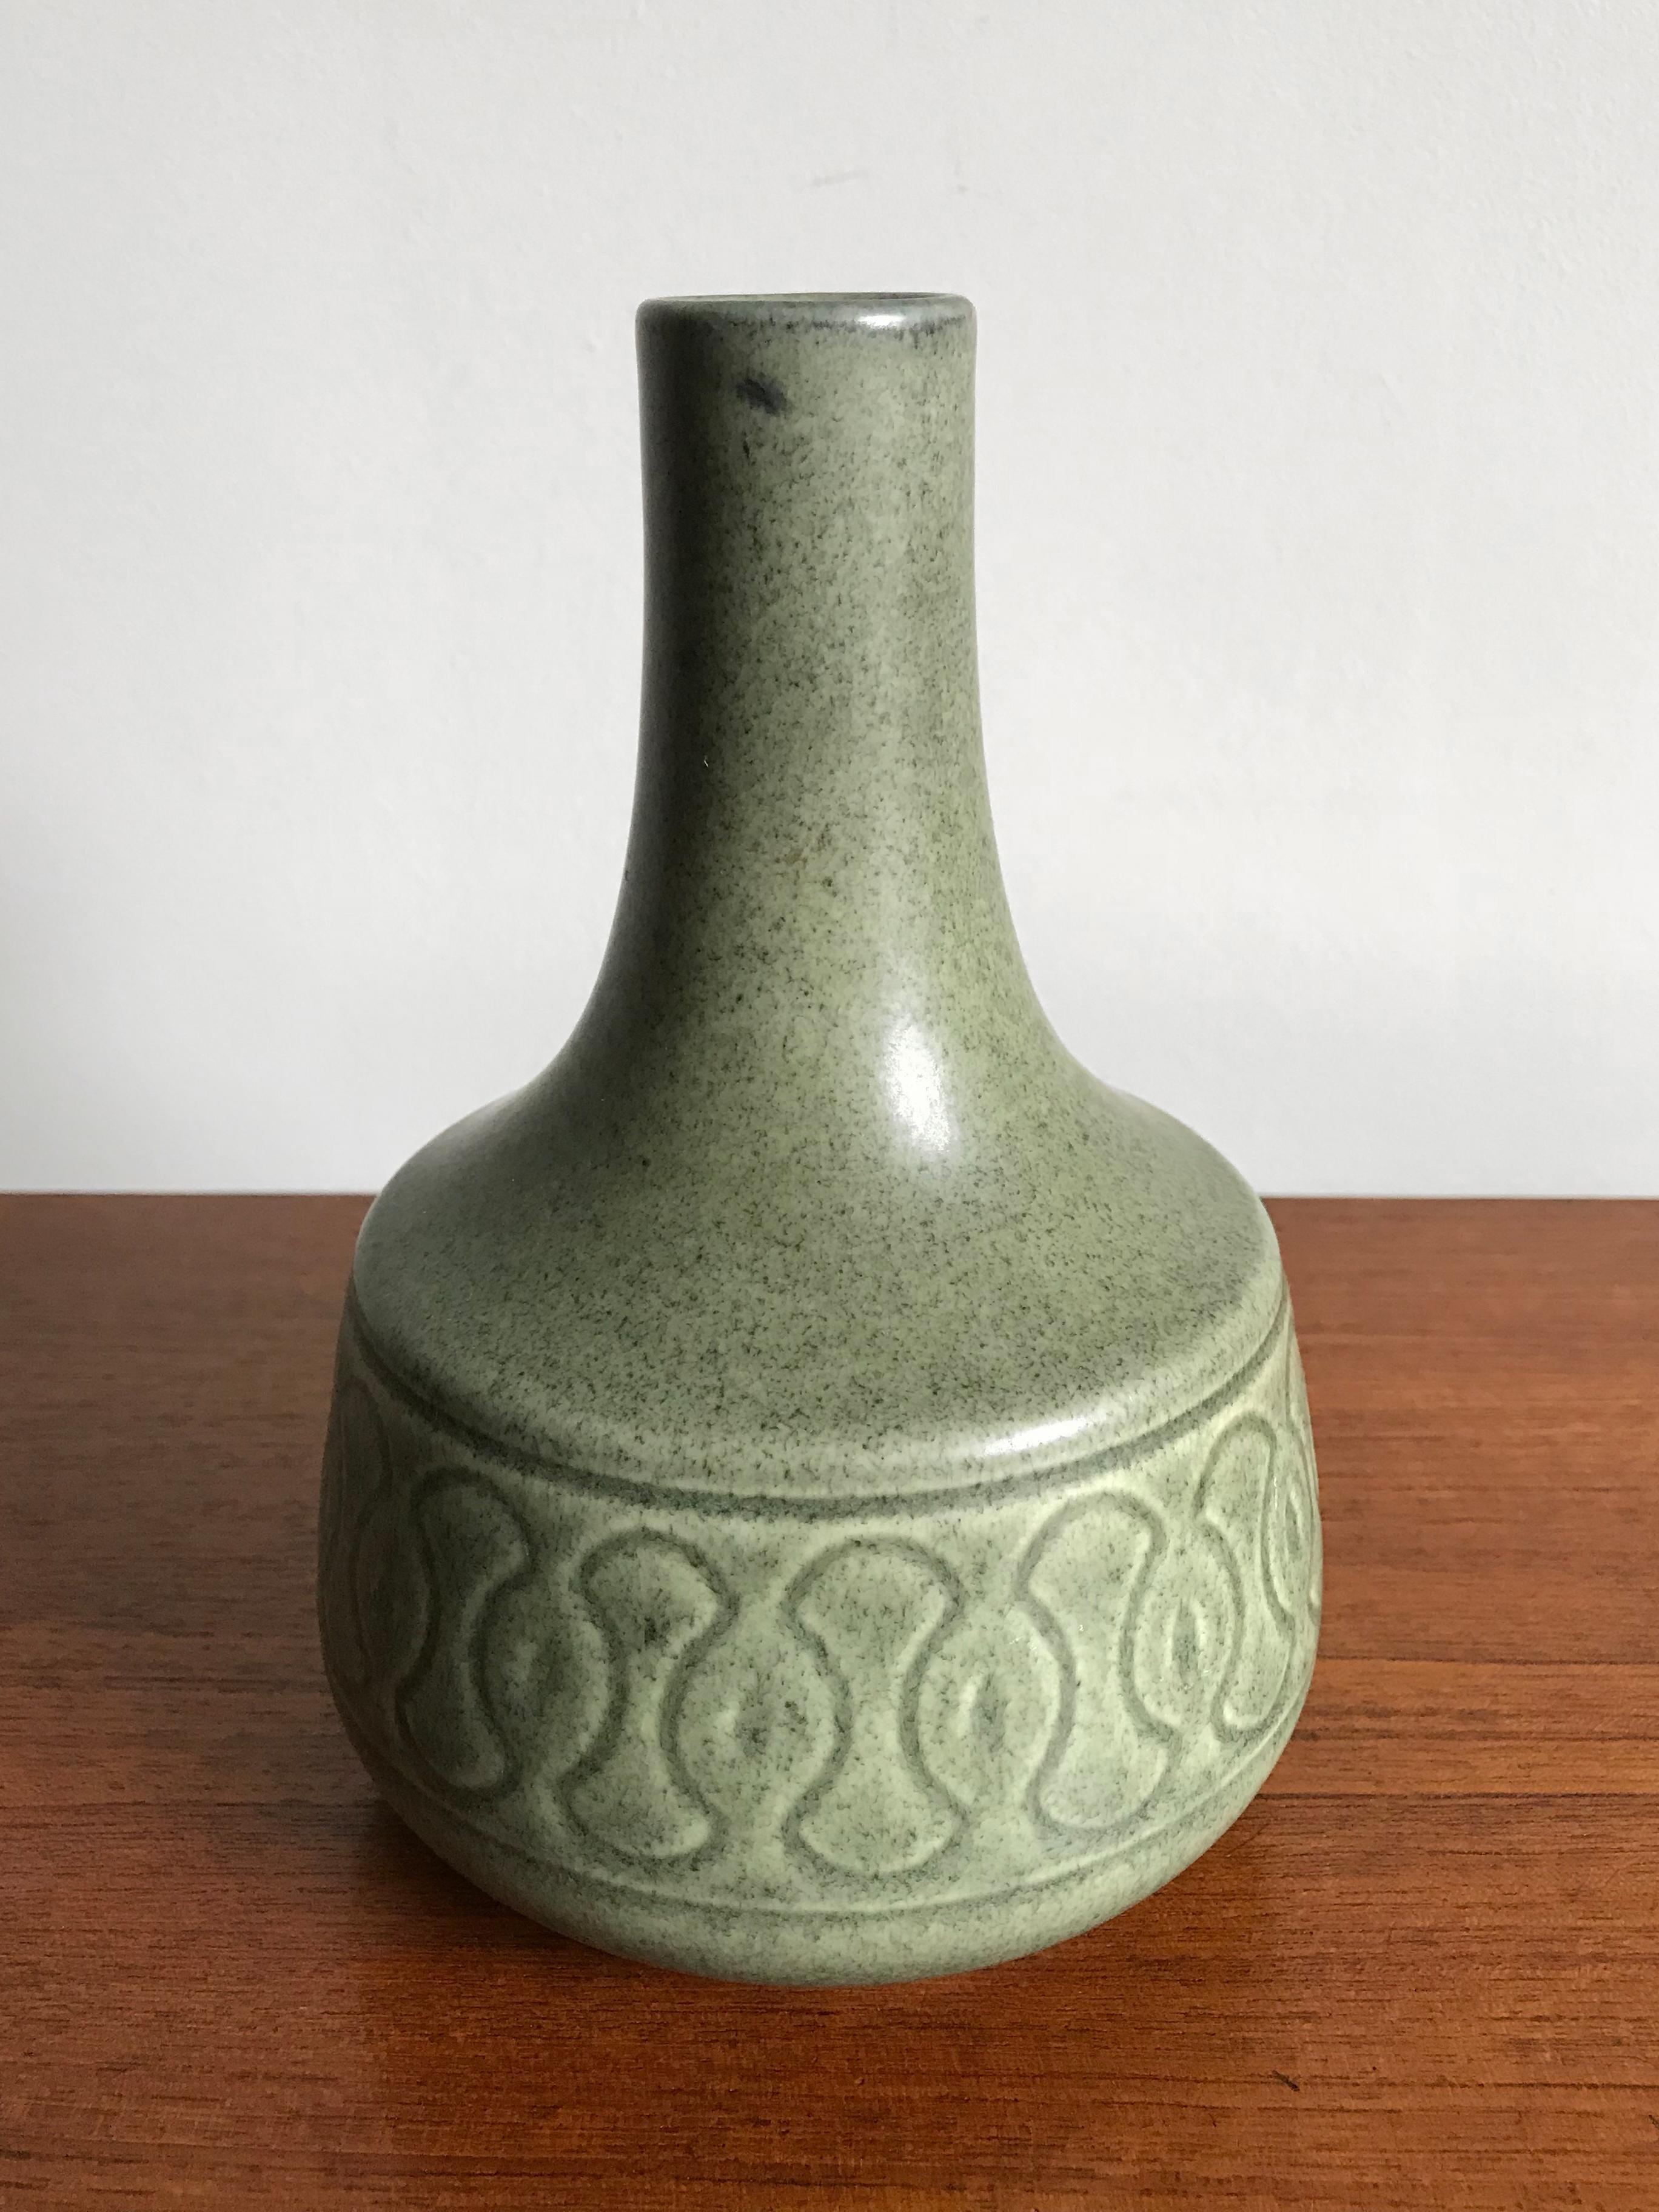 1960s Scandinavian stoneware vases designed by Einar Johansen for Søholm Studio, matt glaze and light green tones, made in Denmark, marked on the bottom.

Big vase: height 20 cm, diameter 13 cm
Small vase: height 13 cm, diameter 9 cm.